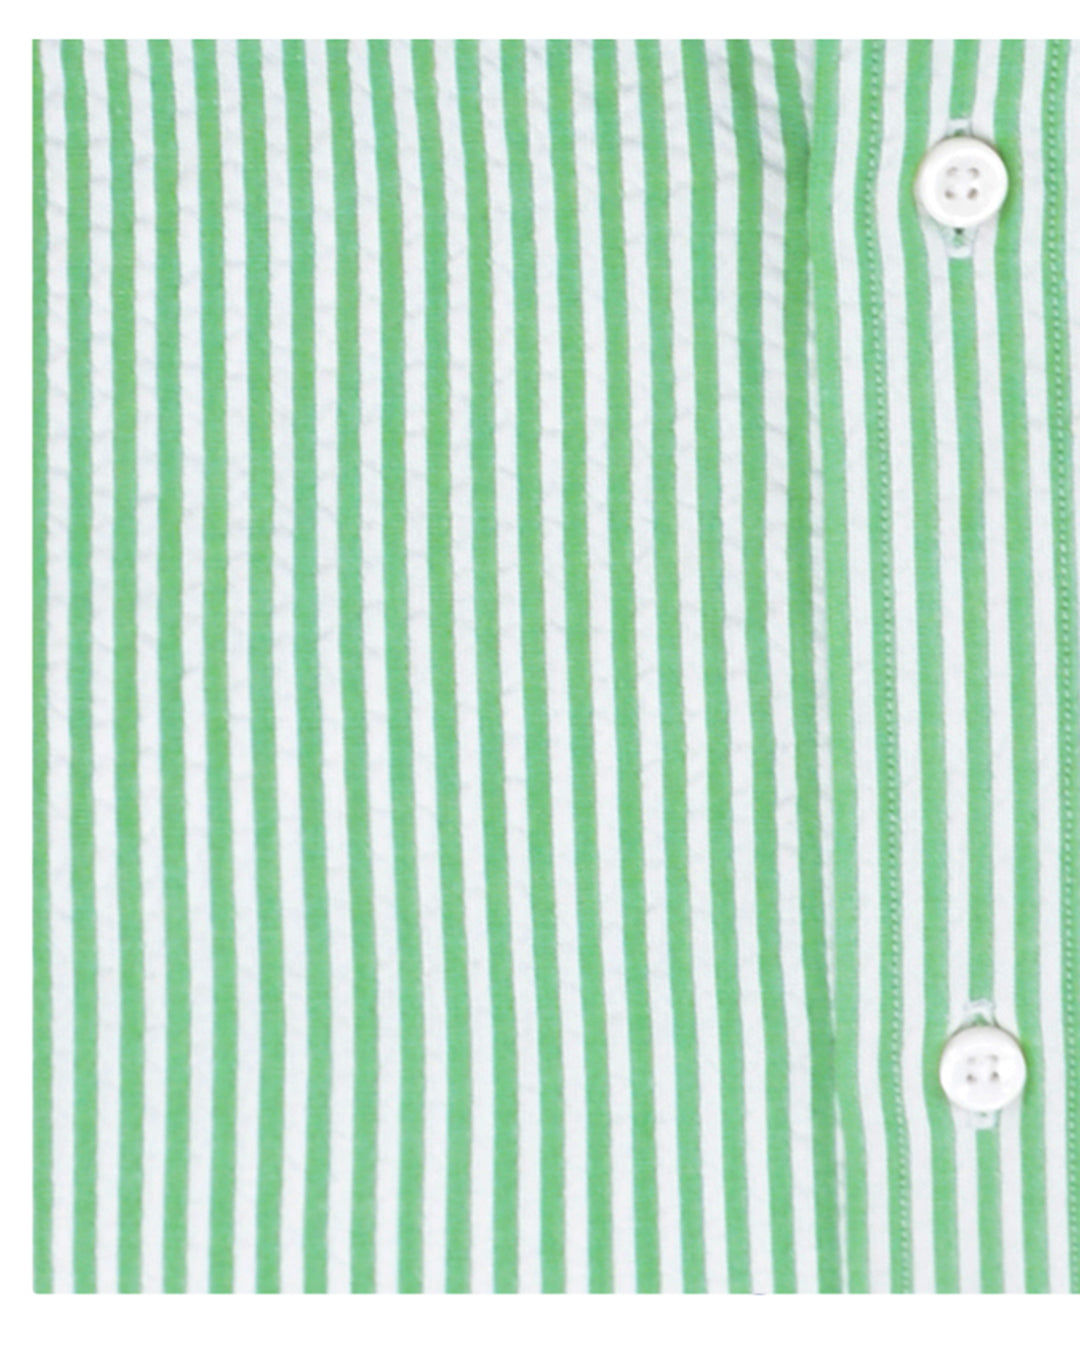 Fern Green Candy Stripes Seersucker